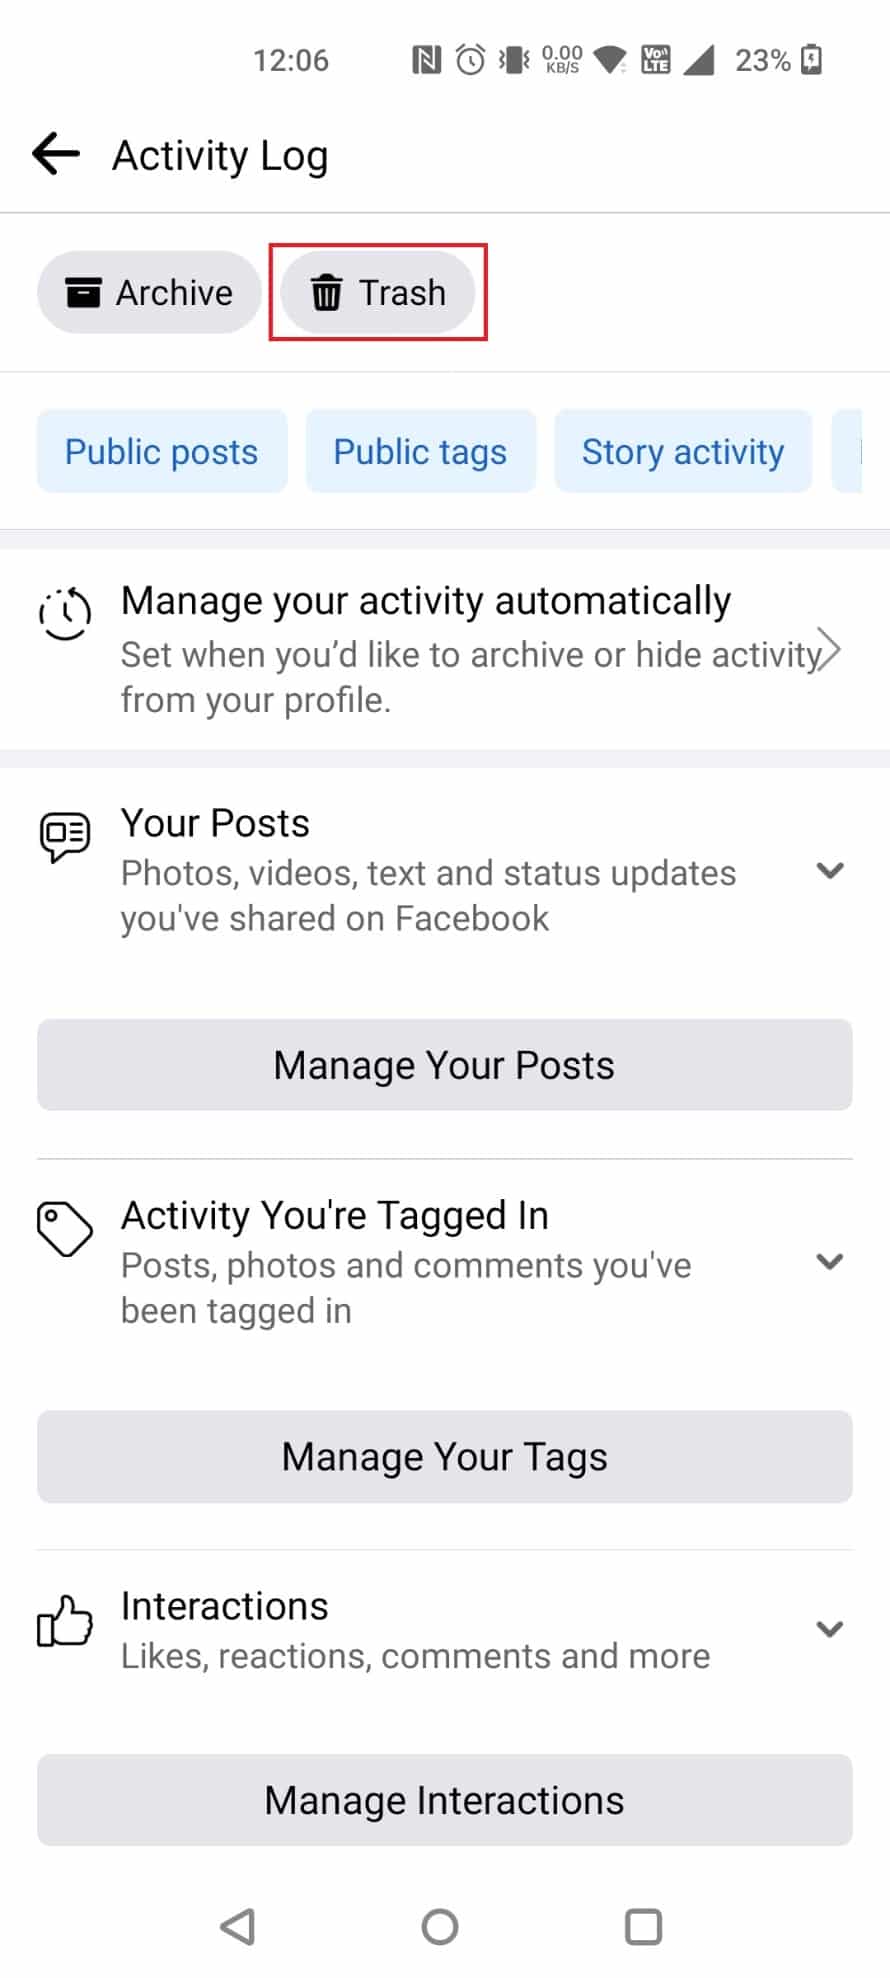 Нажмите «Корзина», чтобы найти все удаленные сообщения за последние 30 дней | Как восстановить удаленные сообщения в Facebook-1